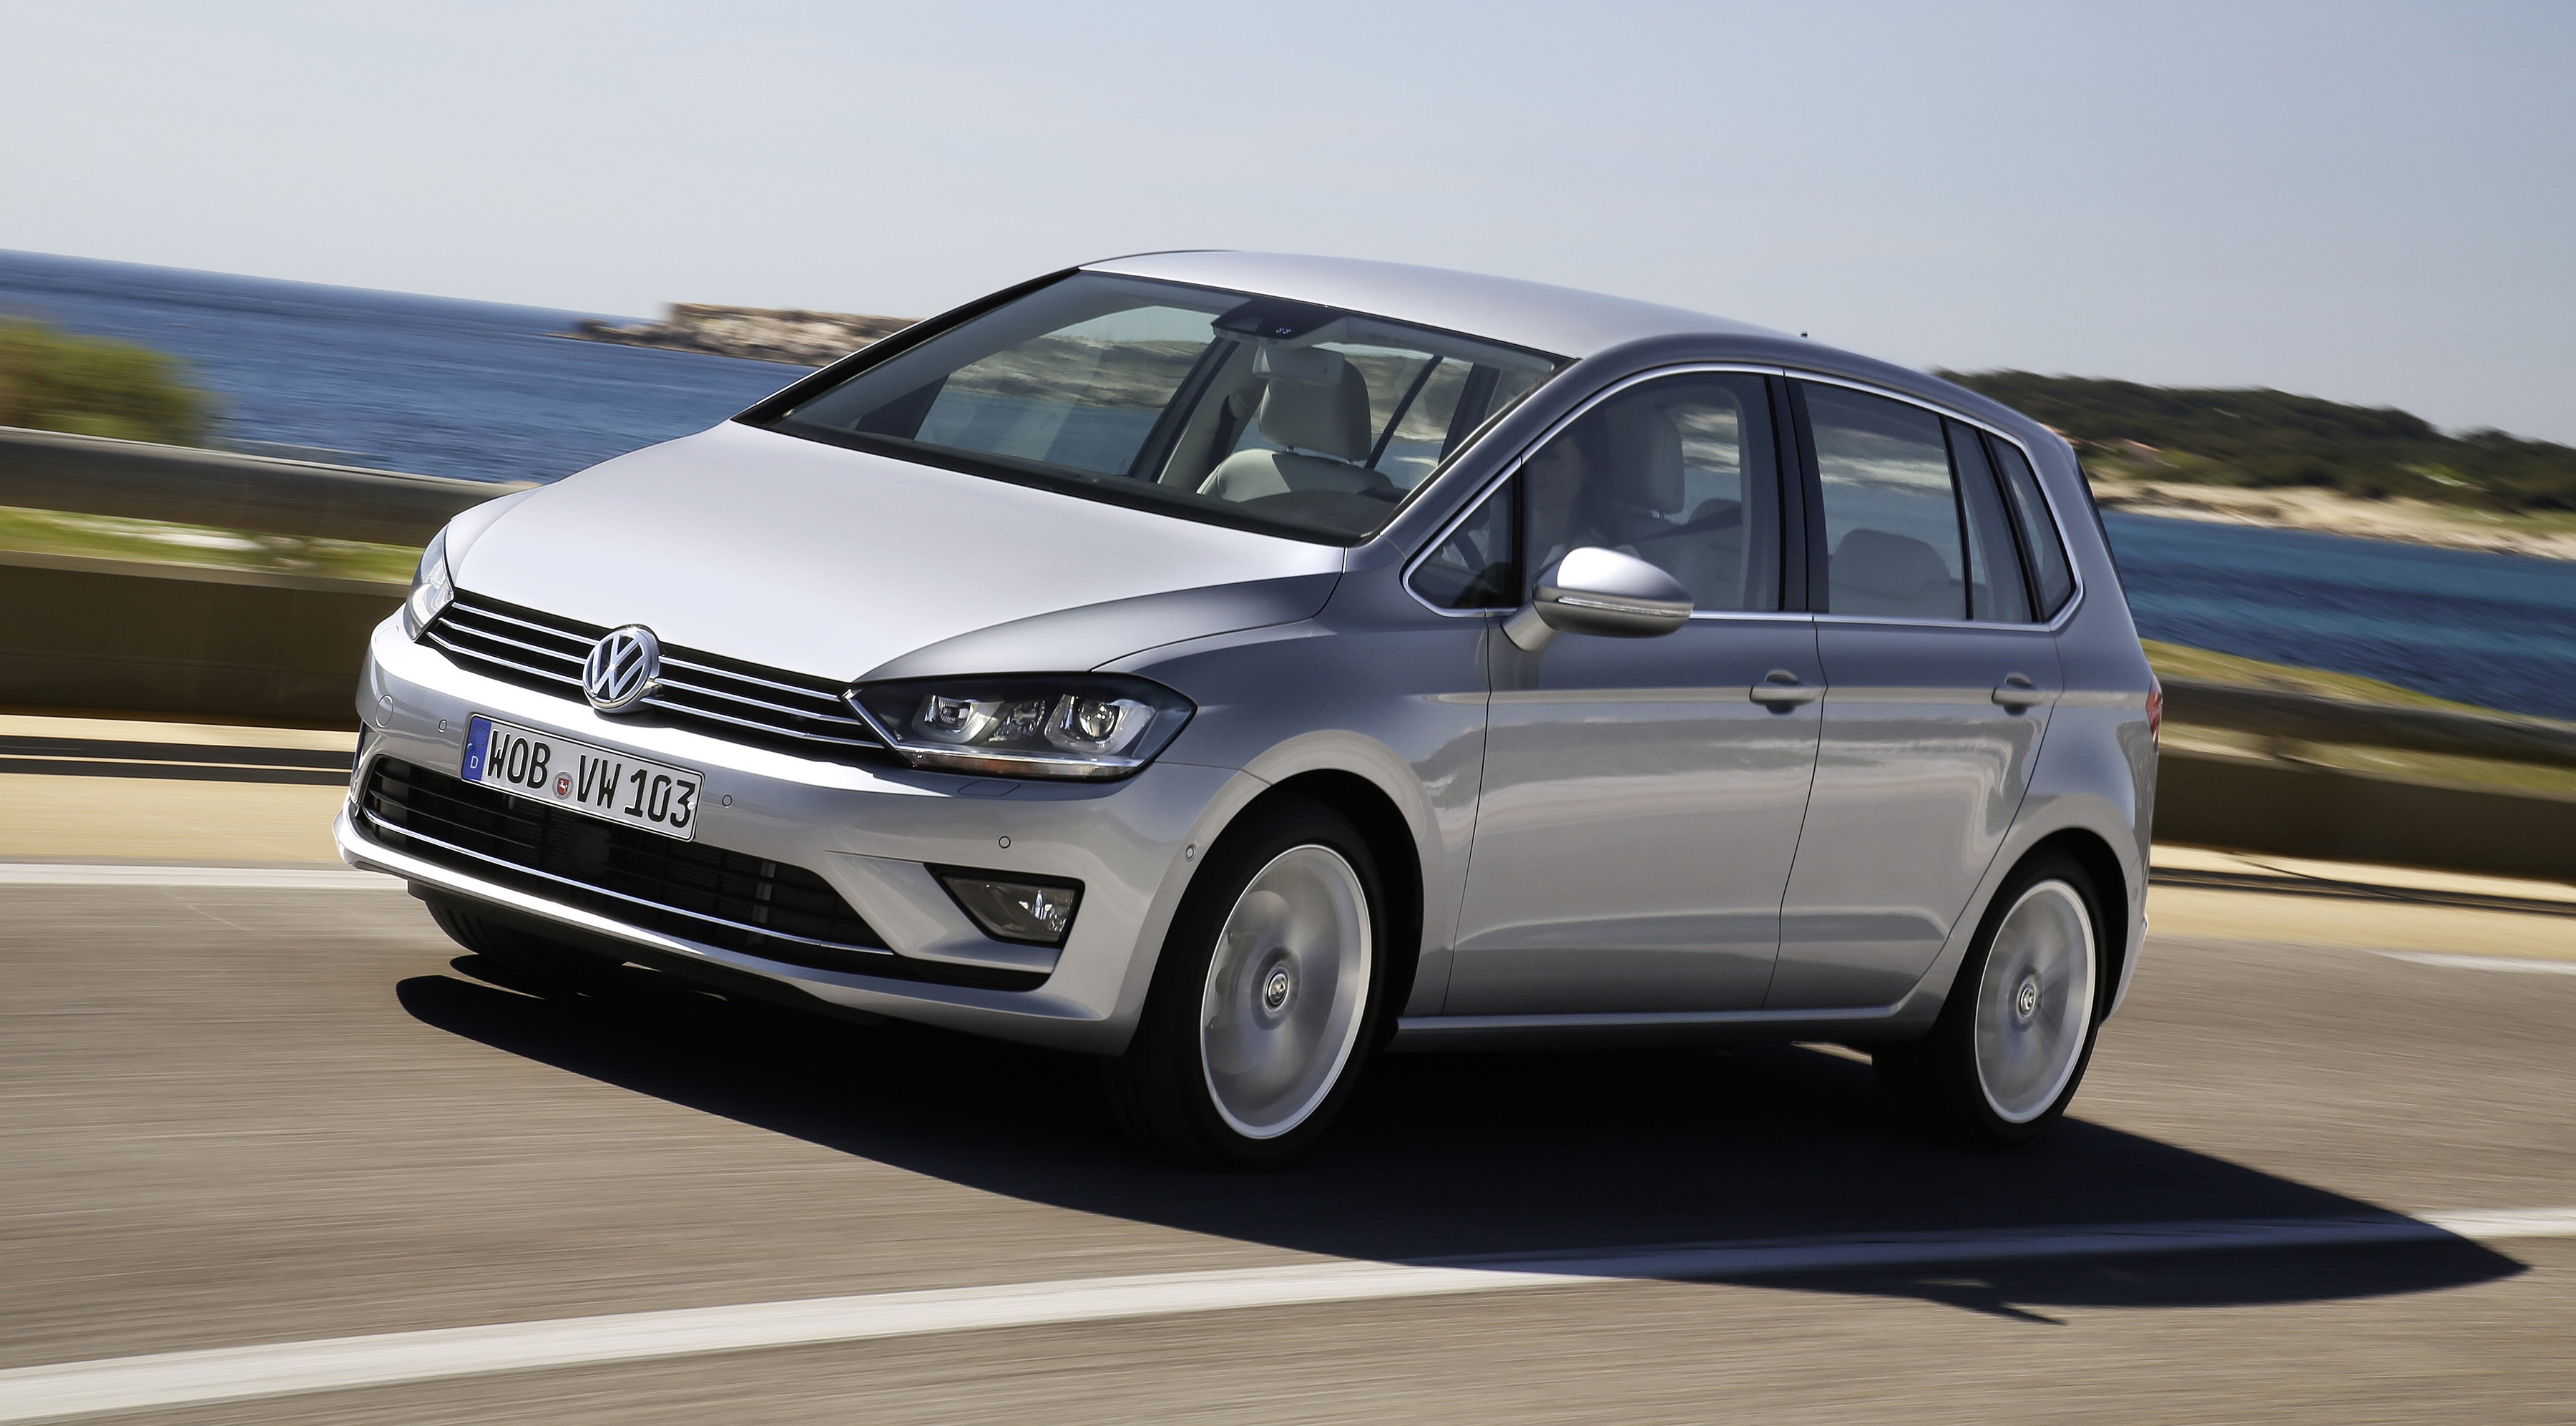 Volkswagen Golf Sportsvan production car unveiled Der